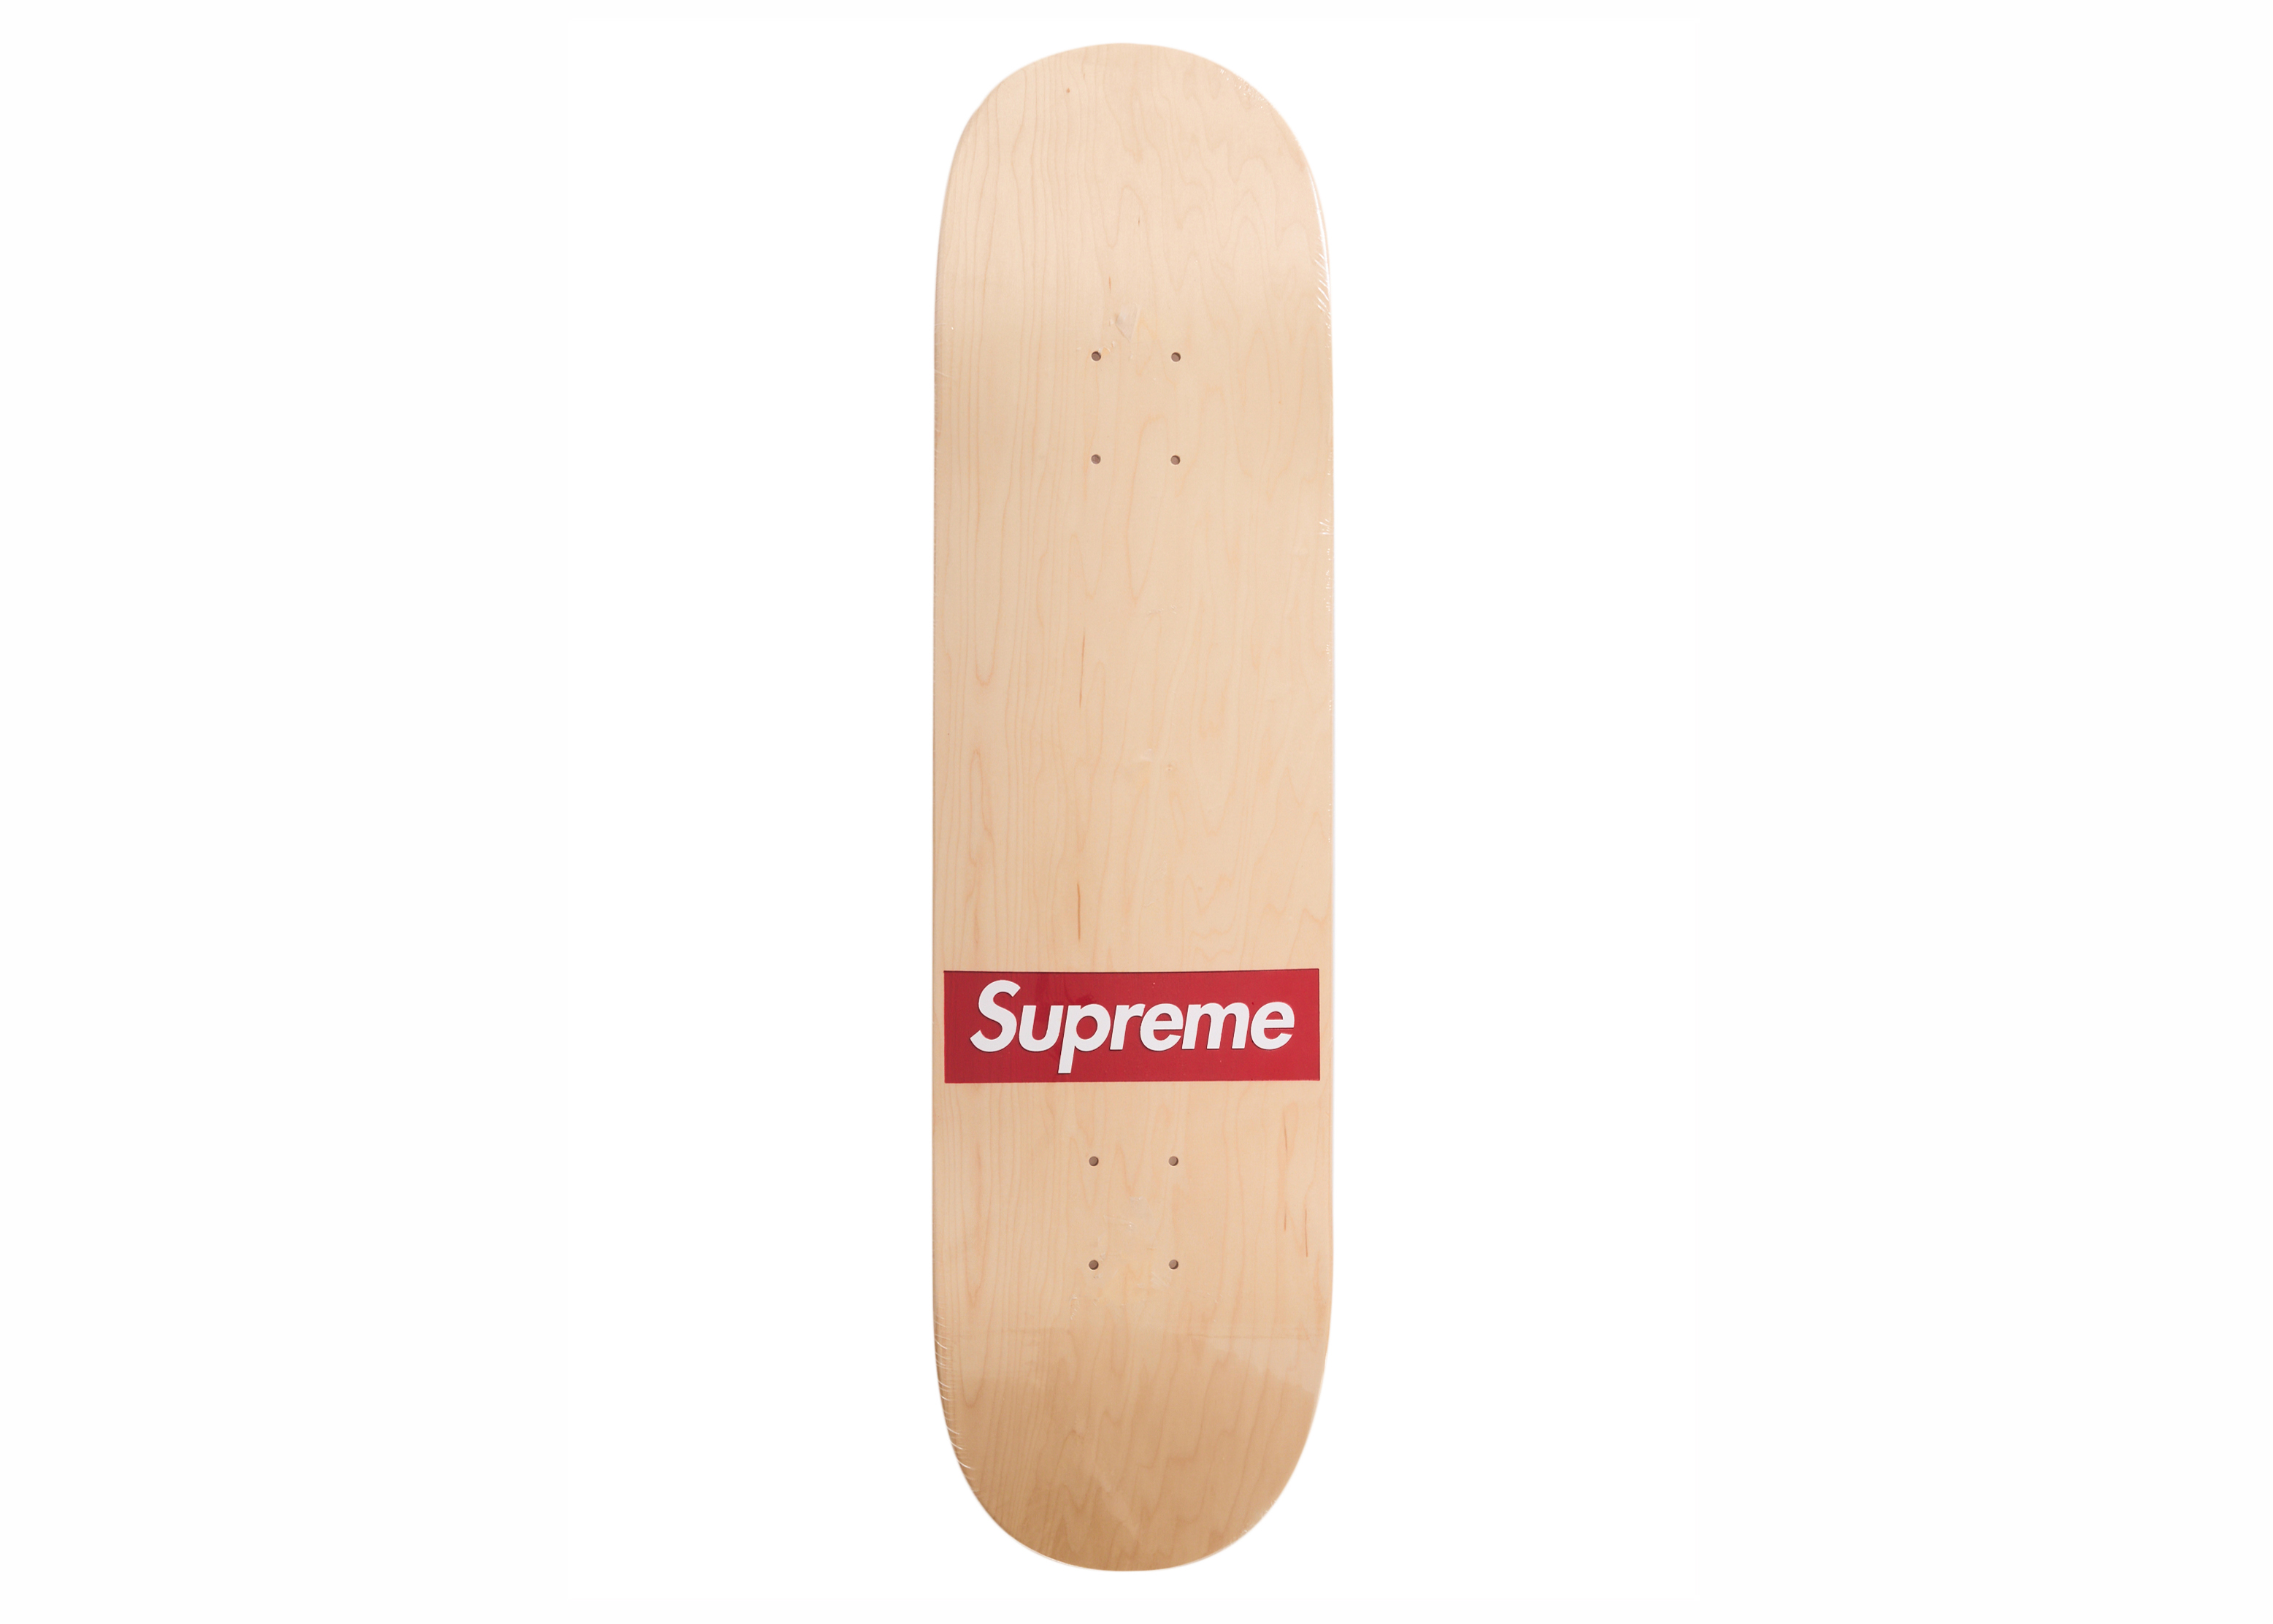 14,900円Supreme routed box logo skateboard